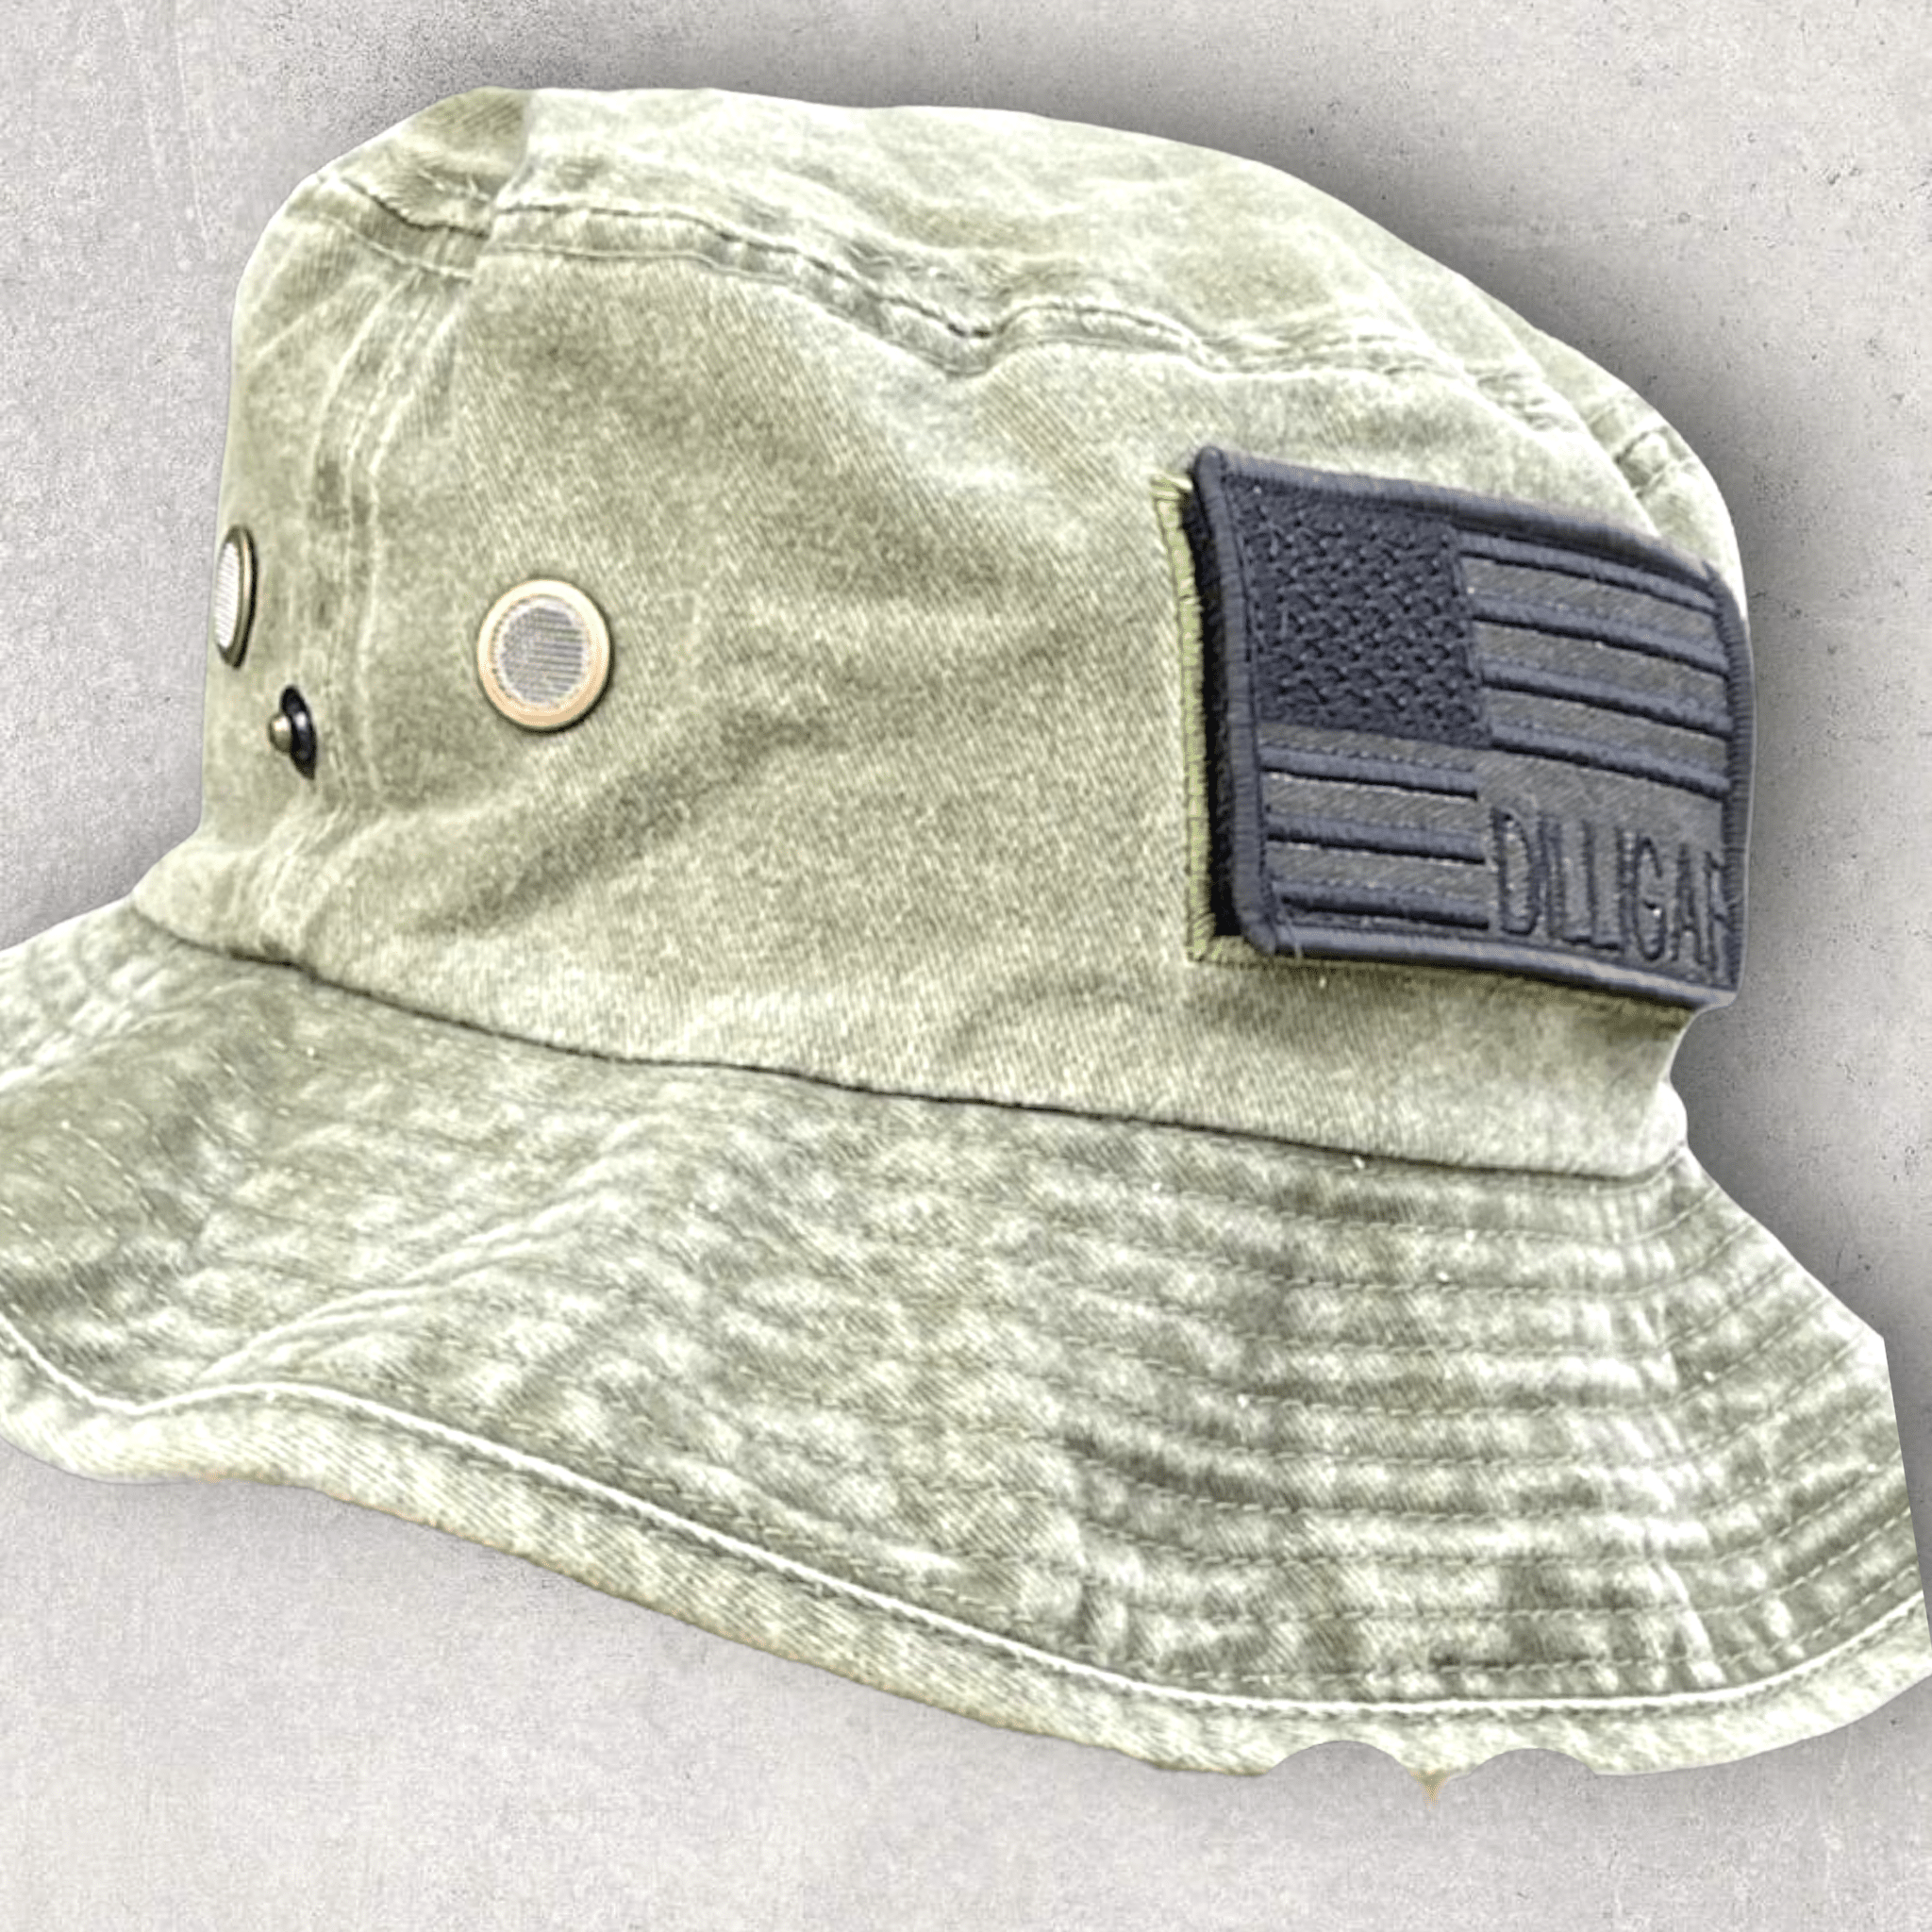 Olive Patriotic Dilligaf Bucket Hat – Dilligaf by Bohica Bill